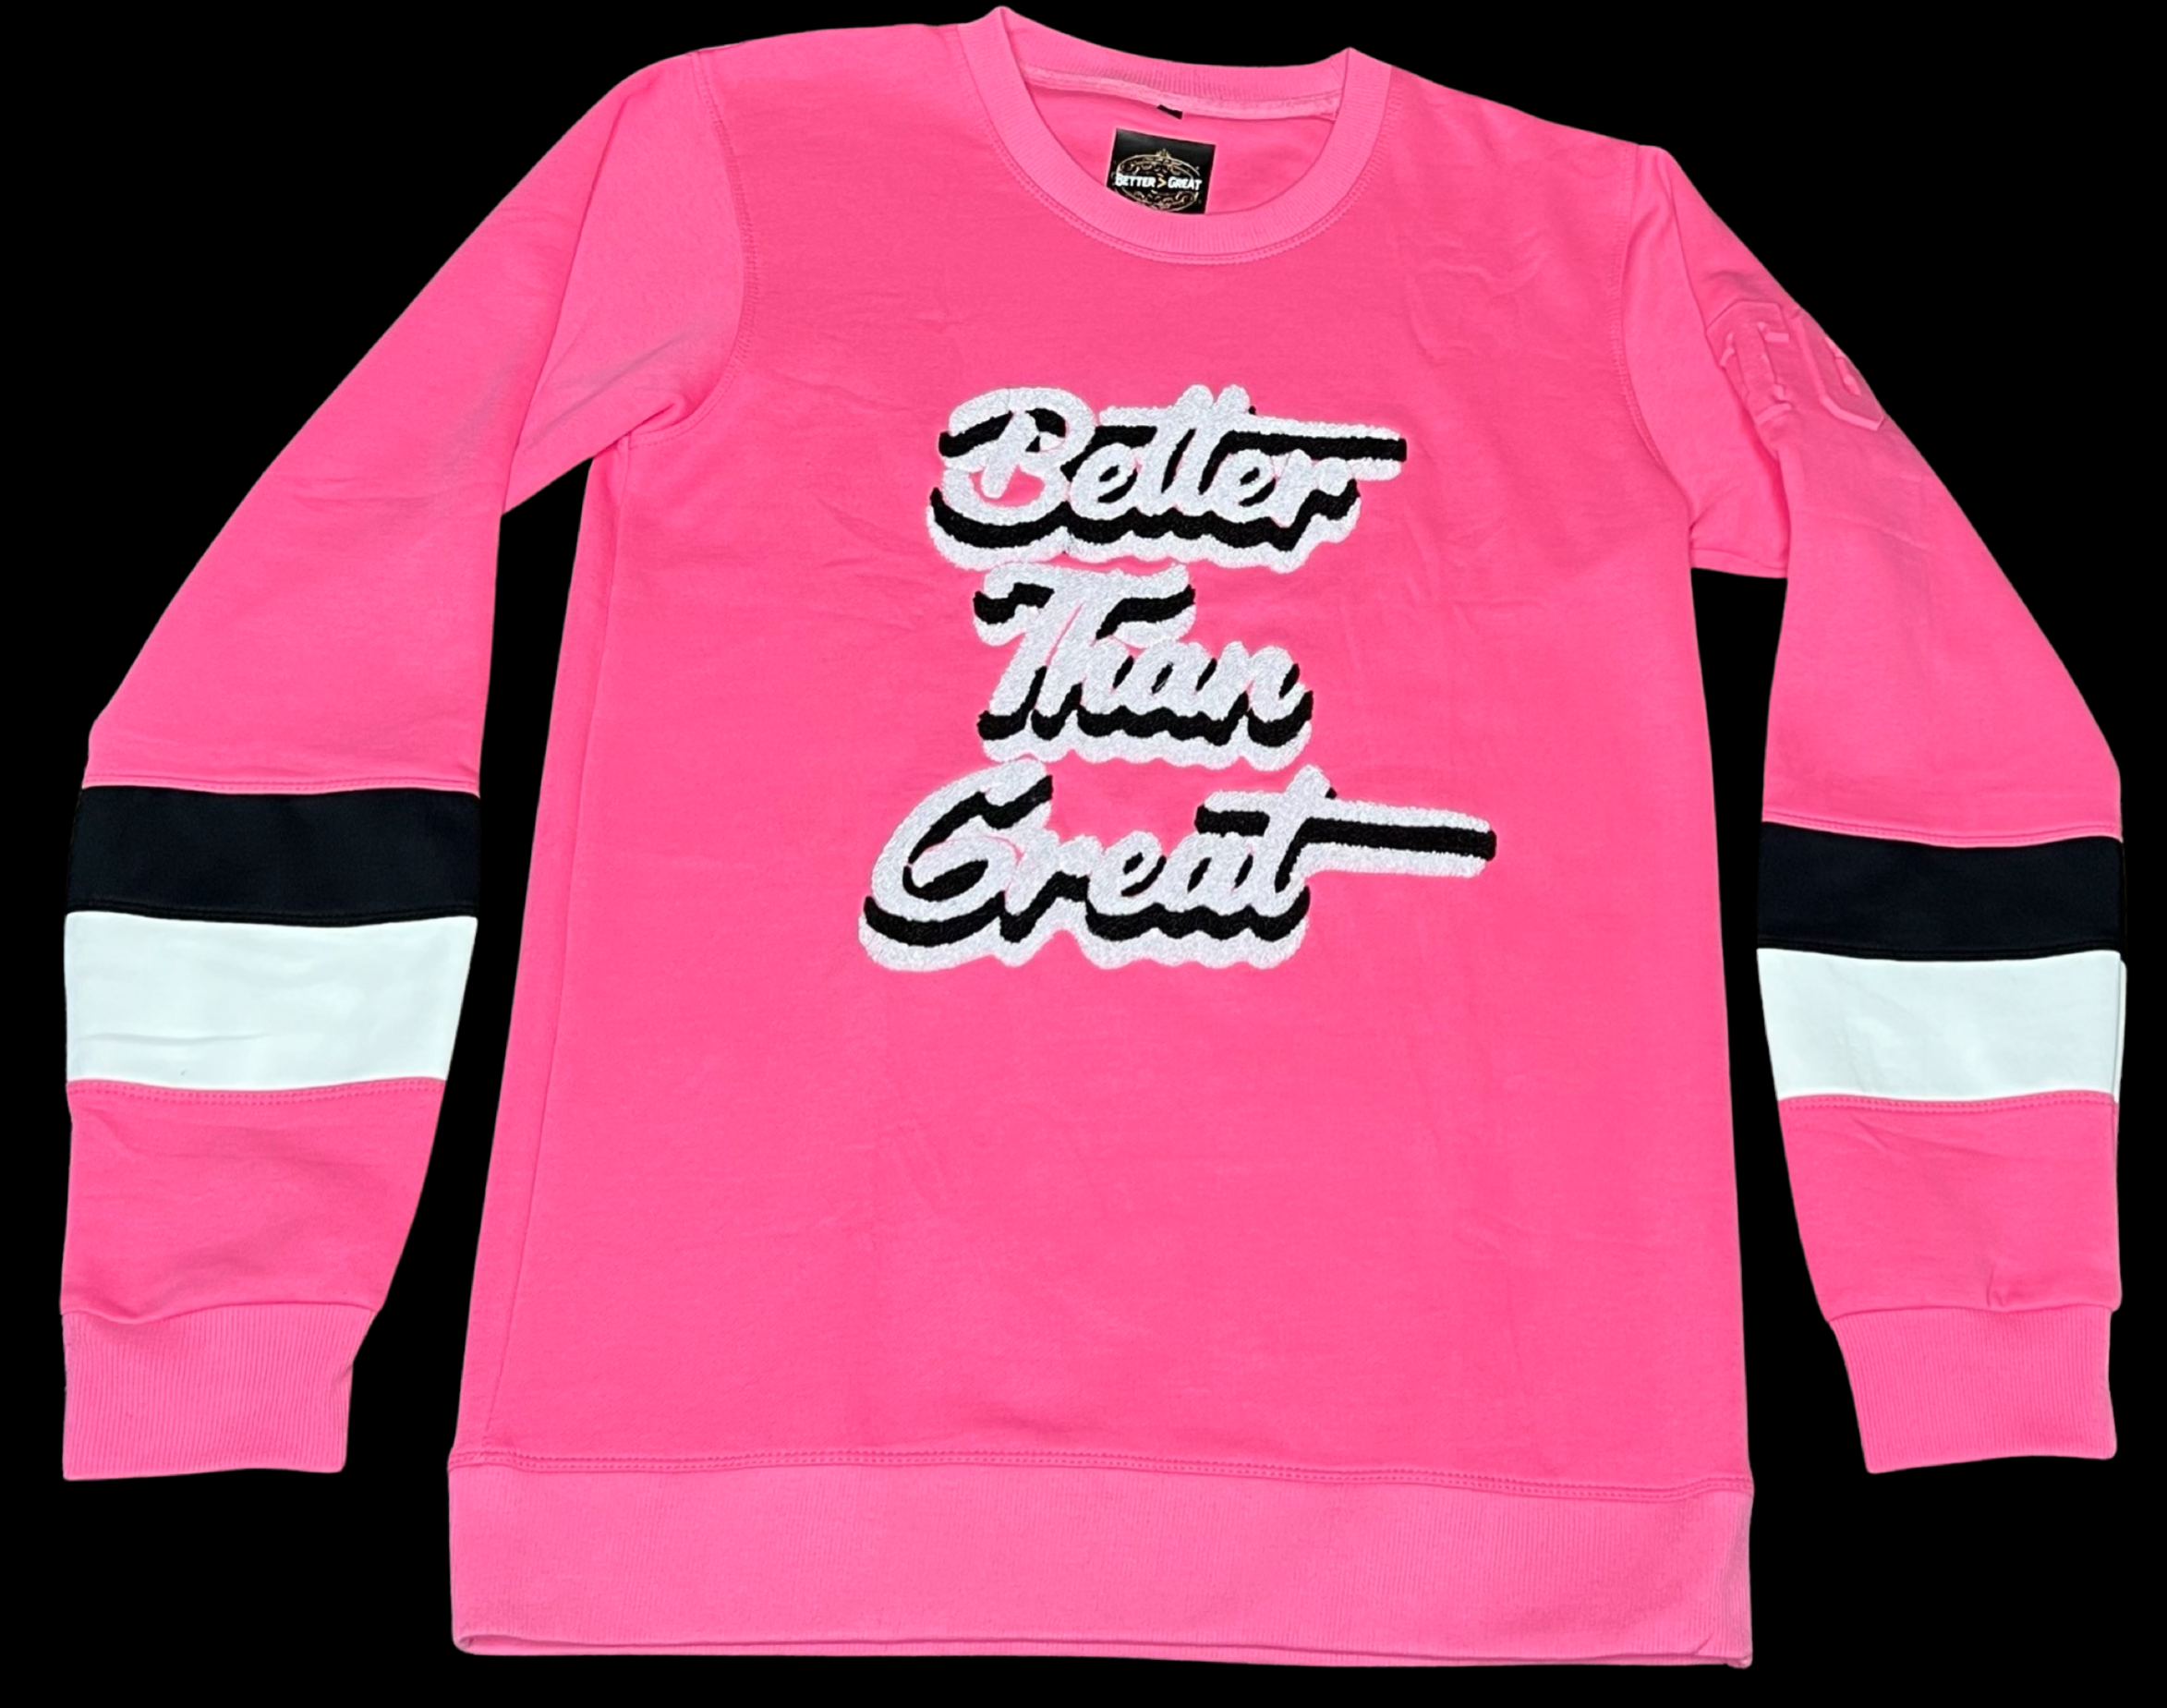 BTG hot Pink Sweatshirt for men and women